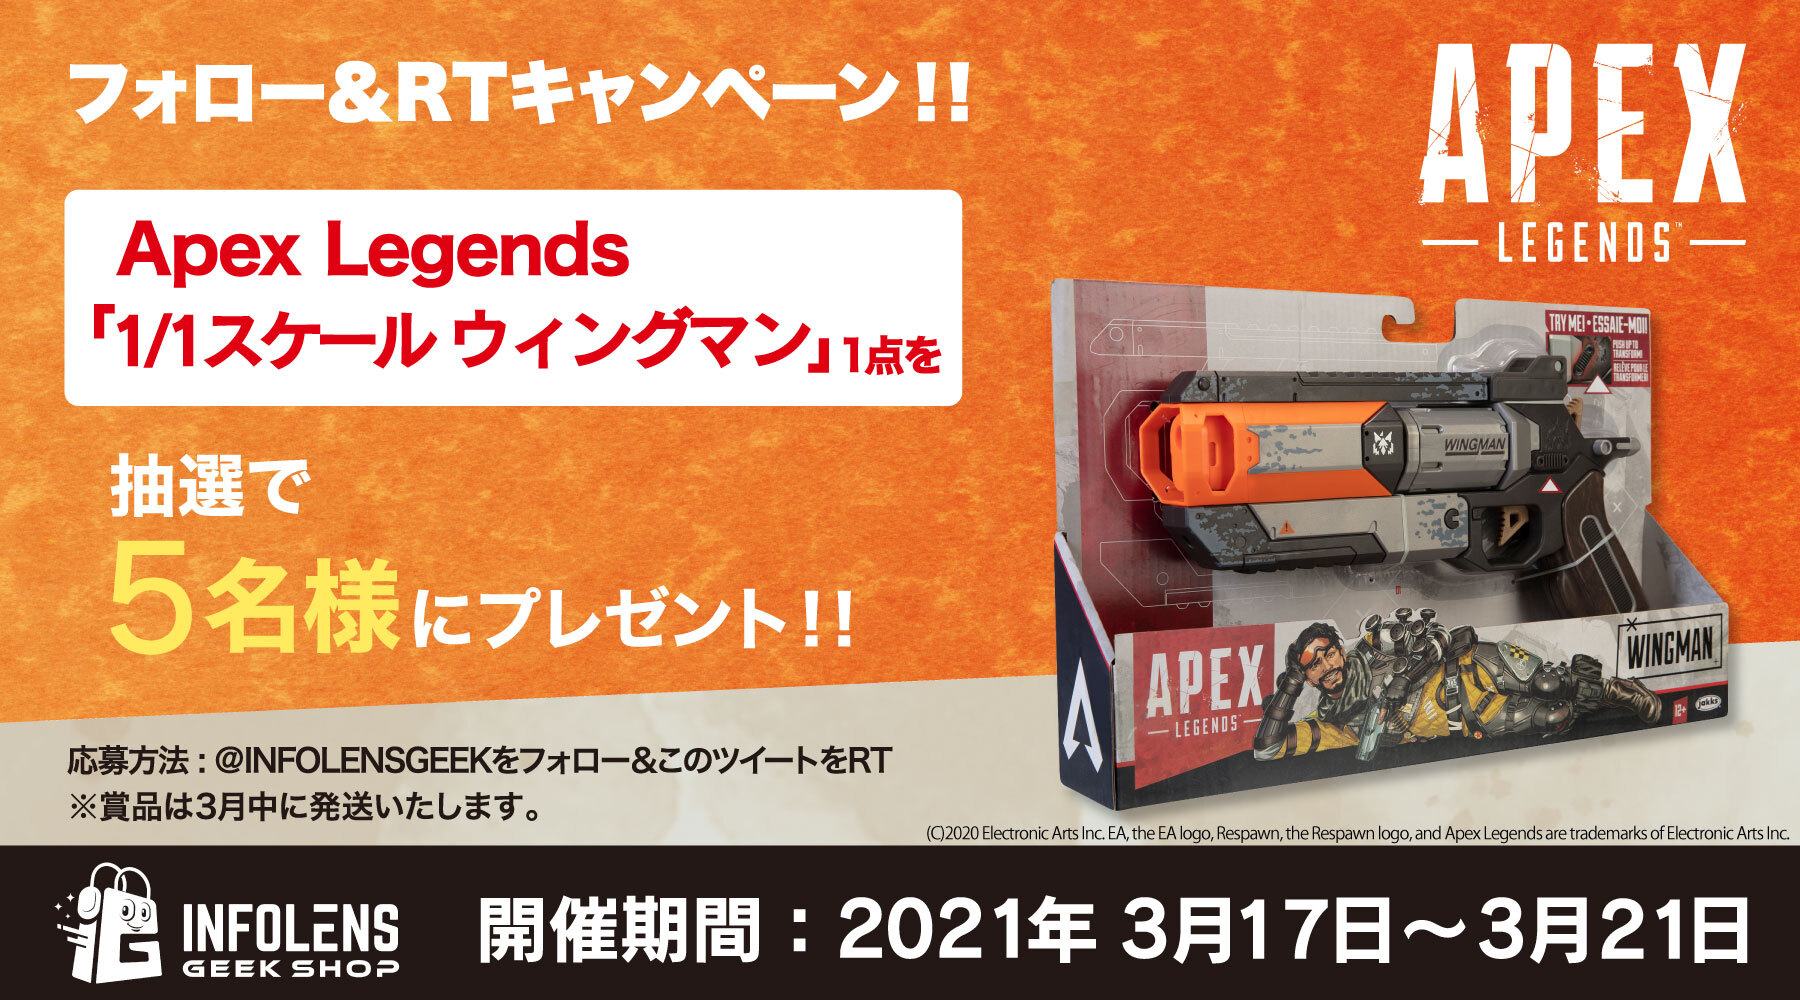 大人気ゲーム Apex Legends の 1 1スケール ウィングマン 再販決定 プレゼントキャンペーンを21年3月17日 21日開催 インフォレンズ株式会社のプレスリリース